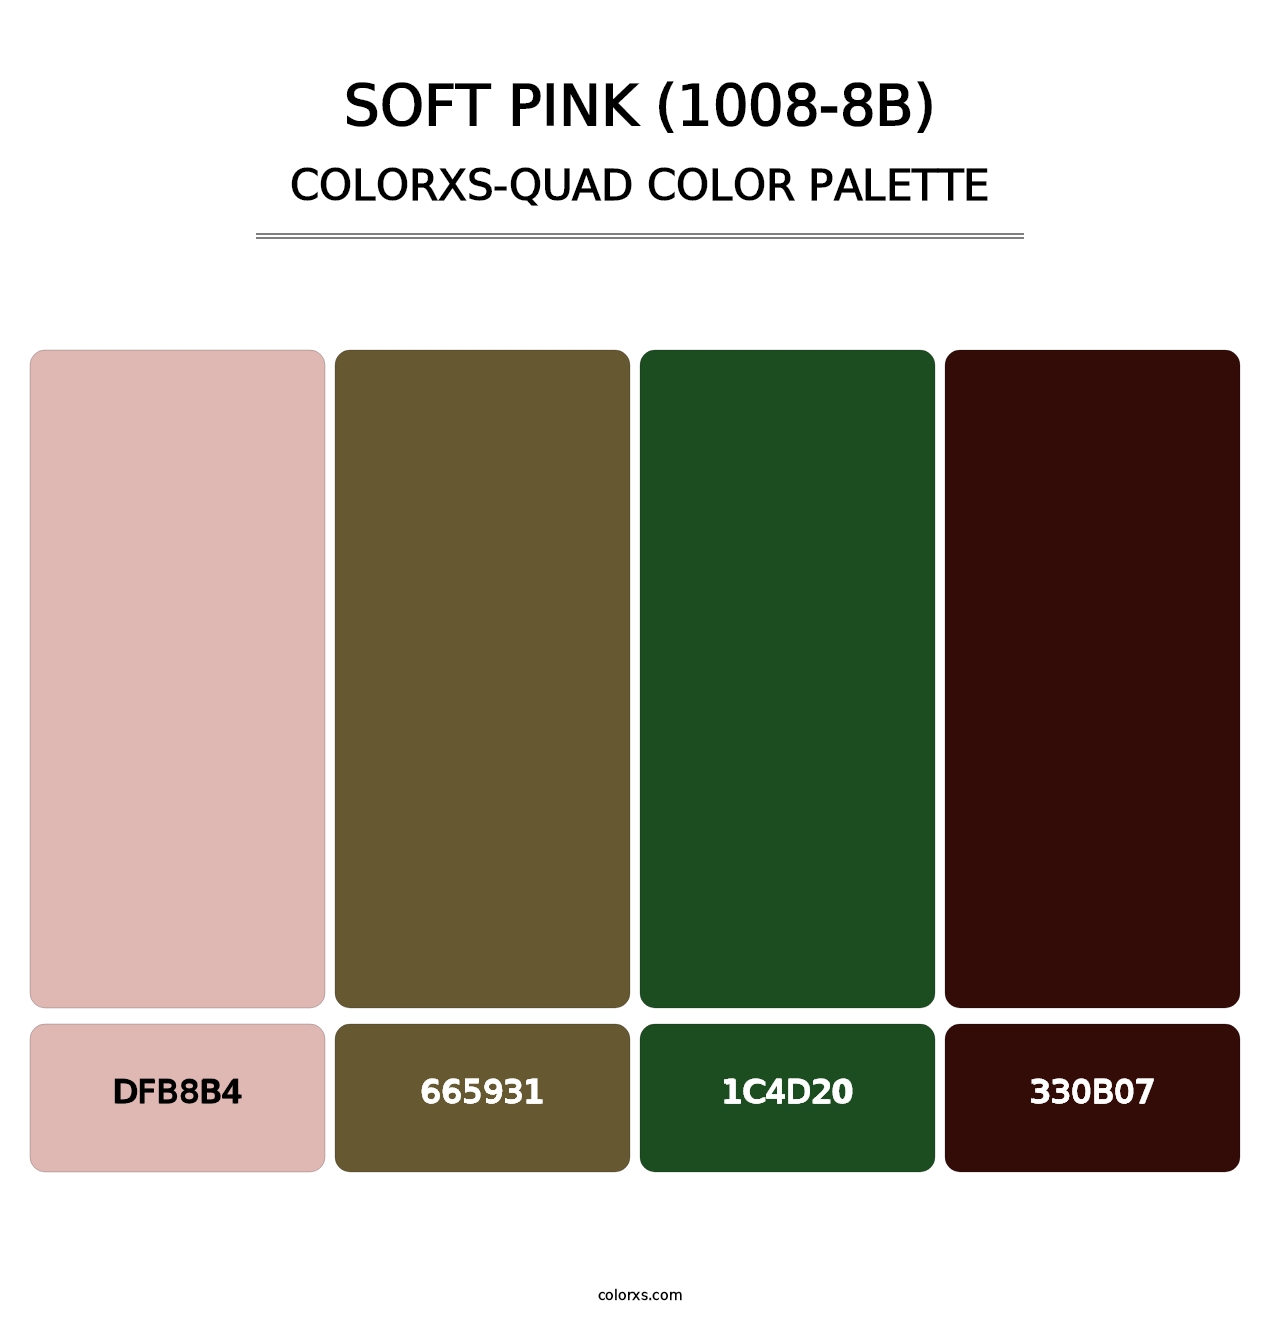 Soft Pink (1008-8B) - Colorxs Quad Palette